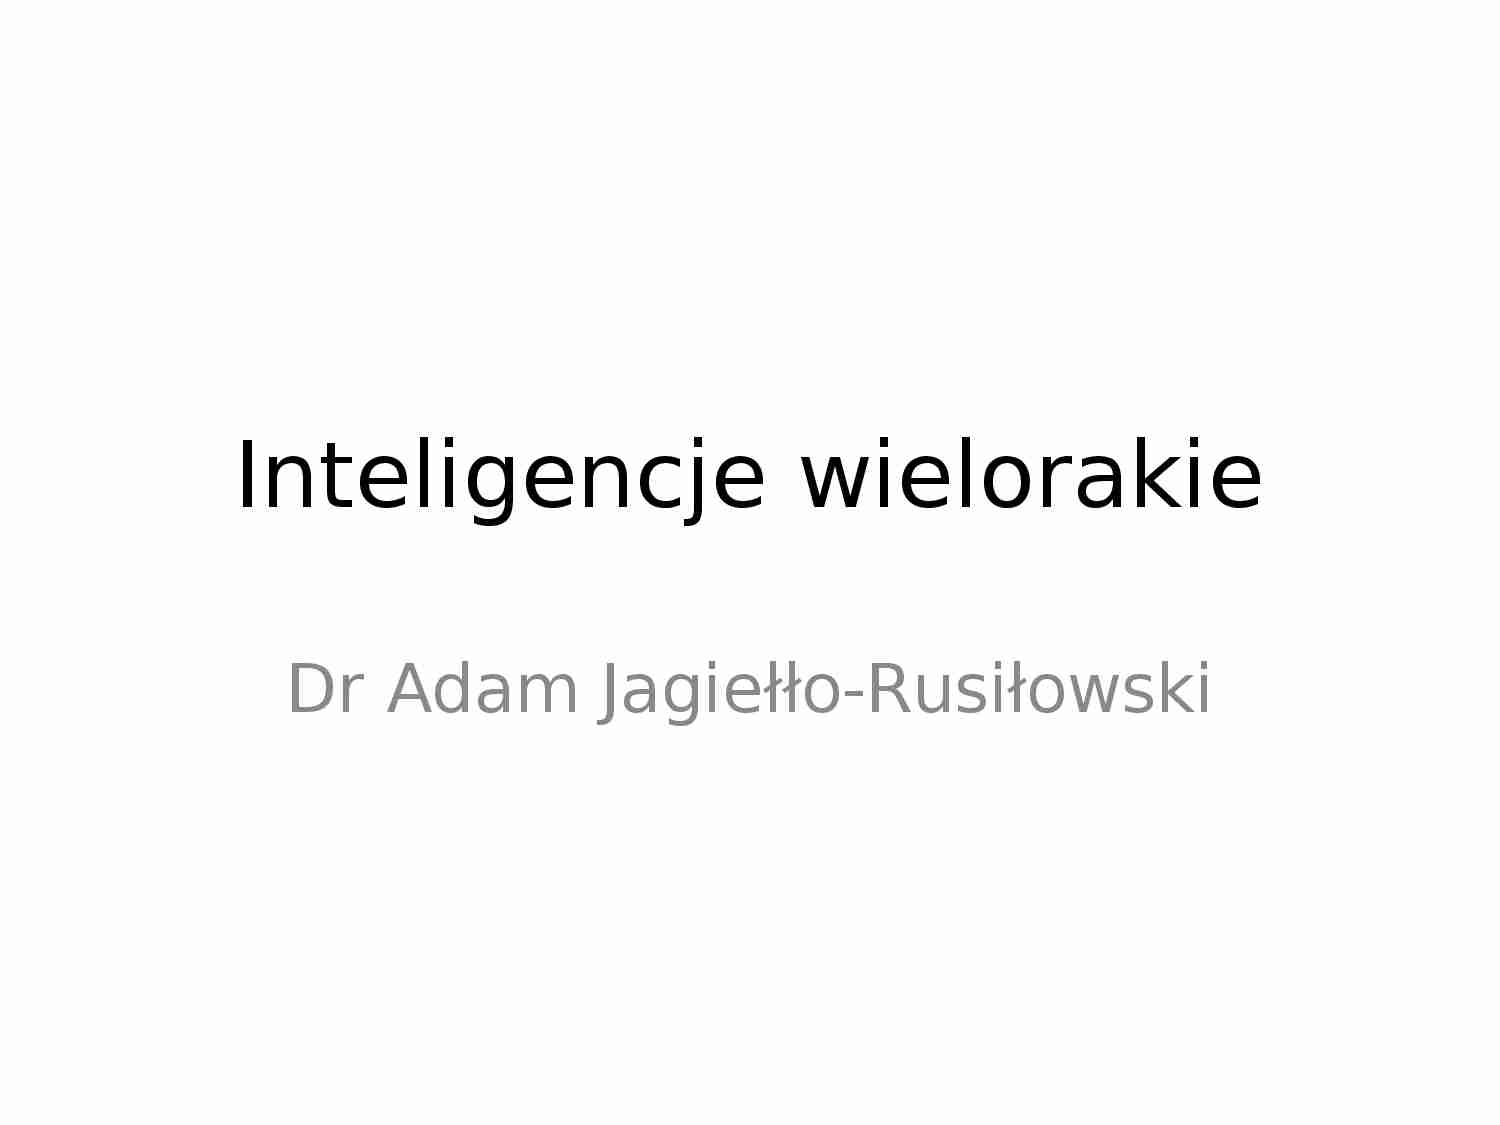 Inteligencje wielorakie - prezentacja - strona 1